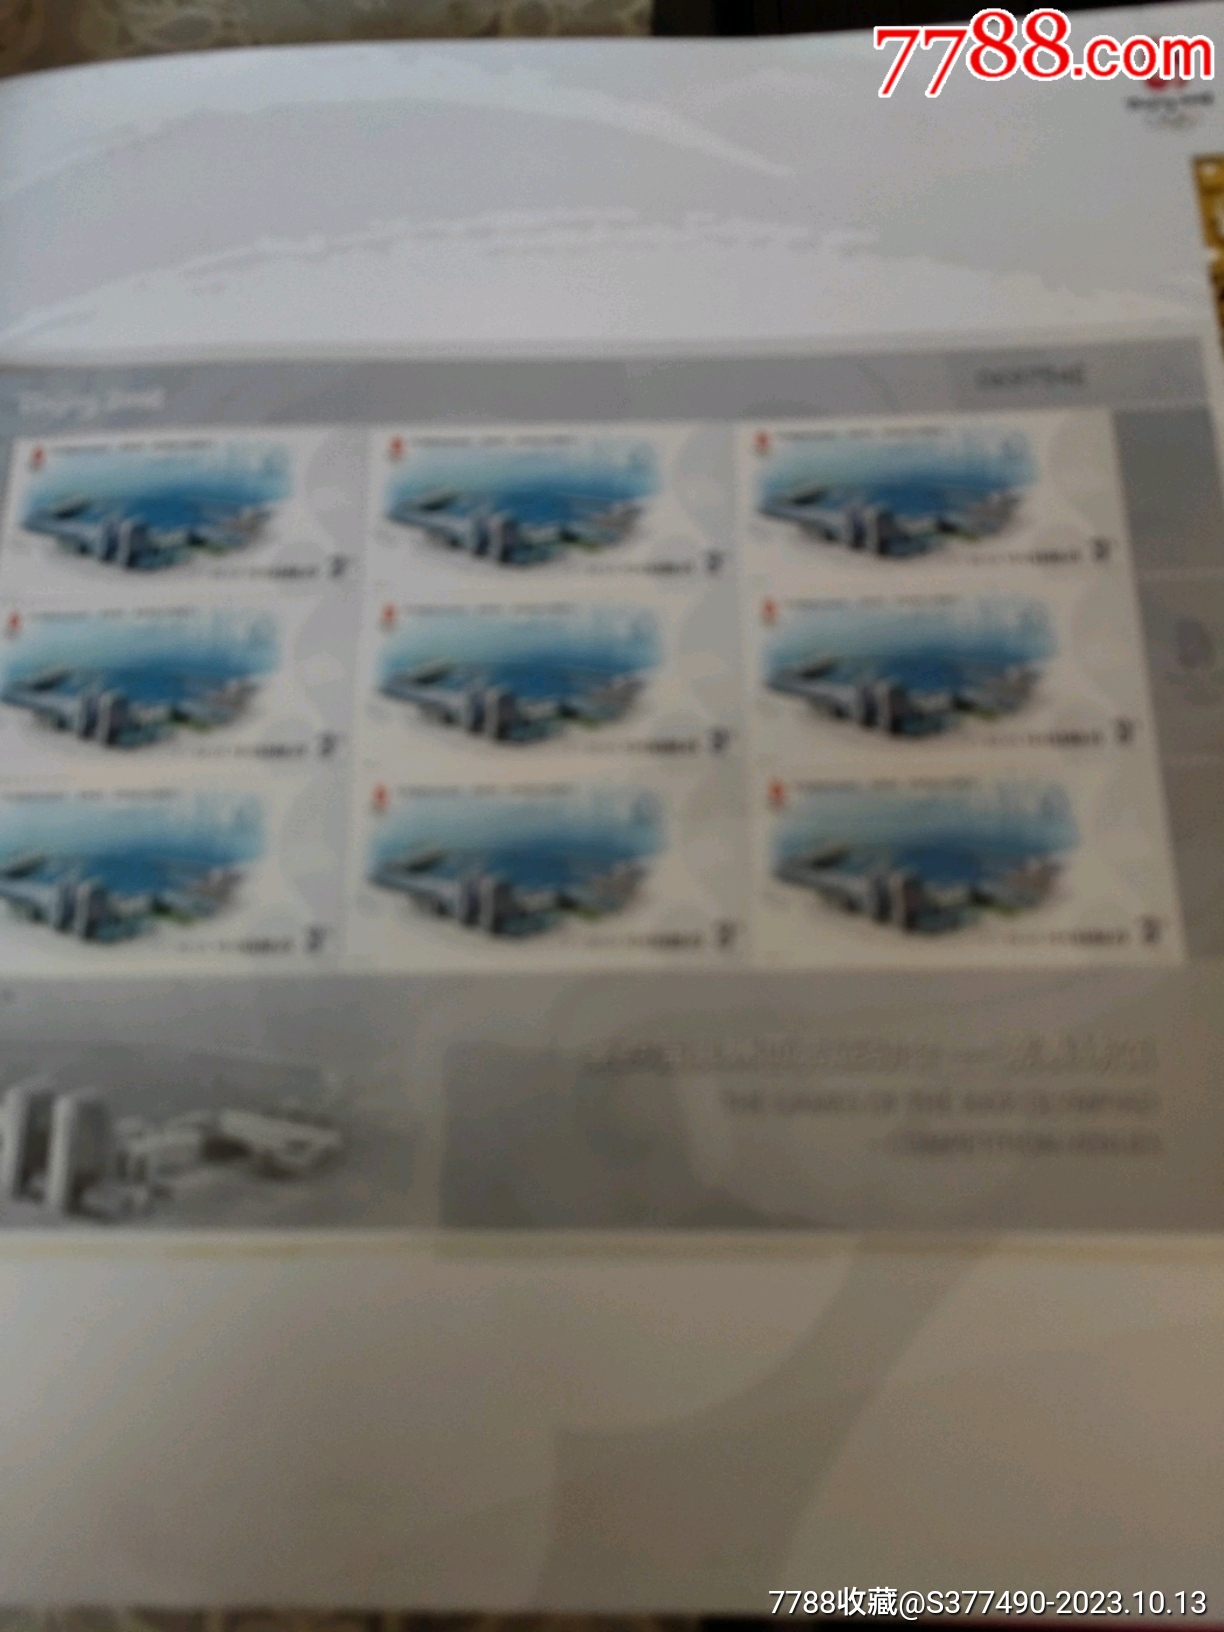 2008奧運會竟賽場館郵票小版張大全冊_價格276元_第21張_